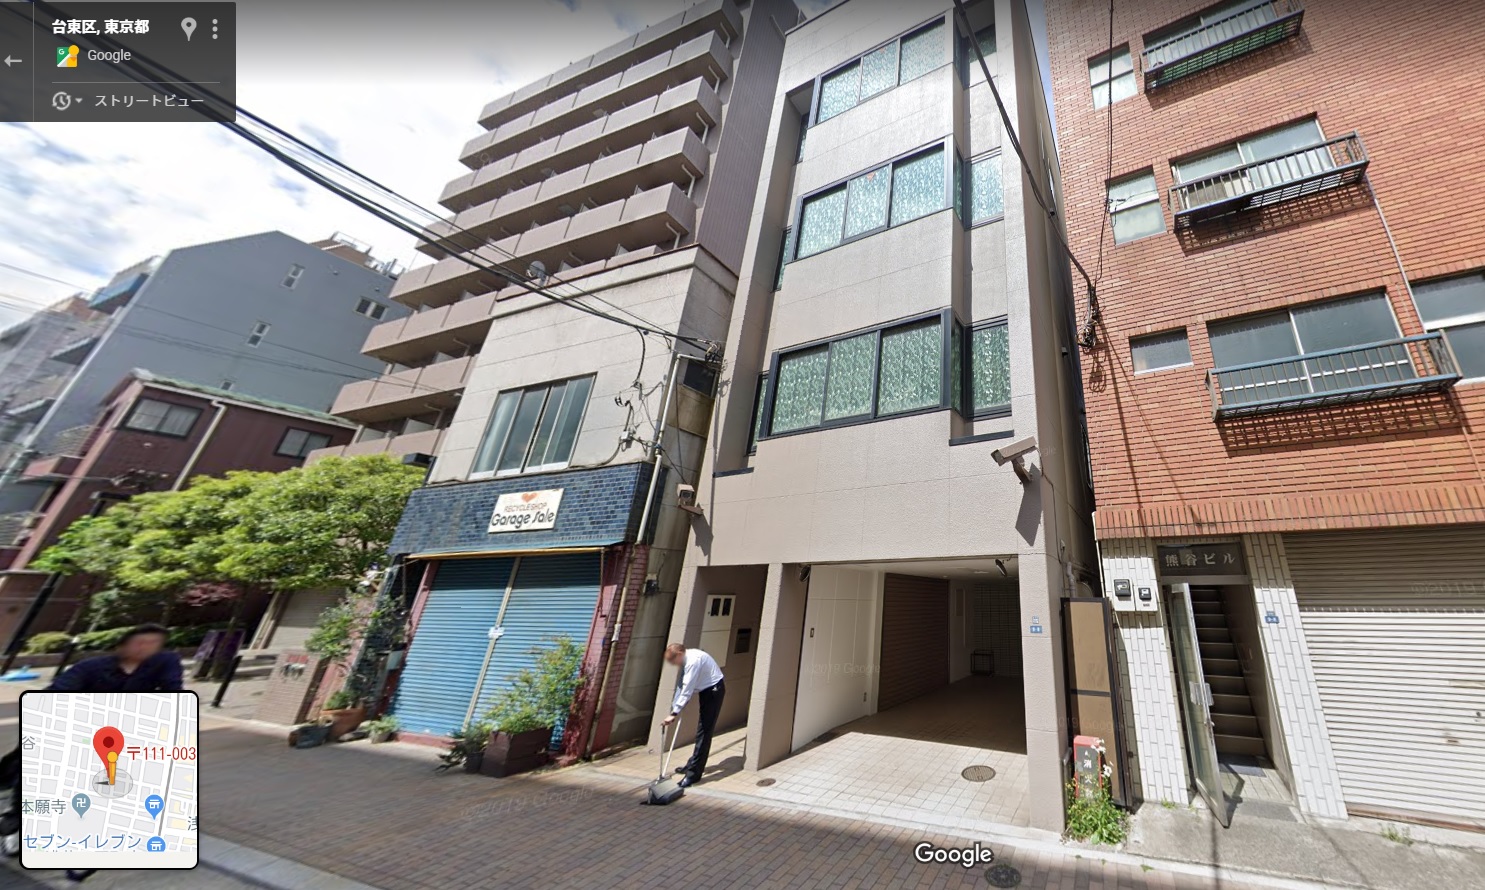 松葉会の本部事務所火炎瓶炎上は弘道会の松葉会による歌舞伎町カジノ襲撃の返し